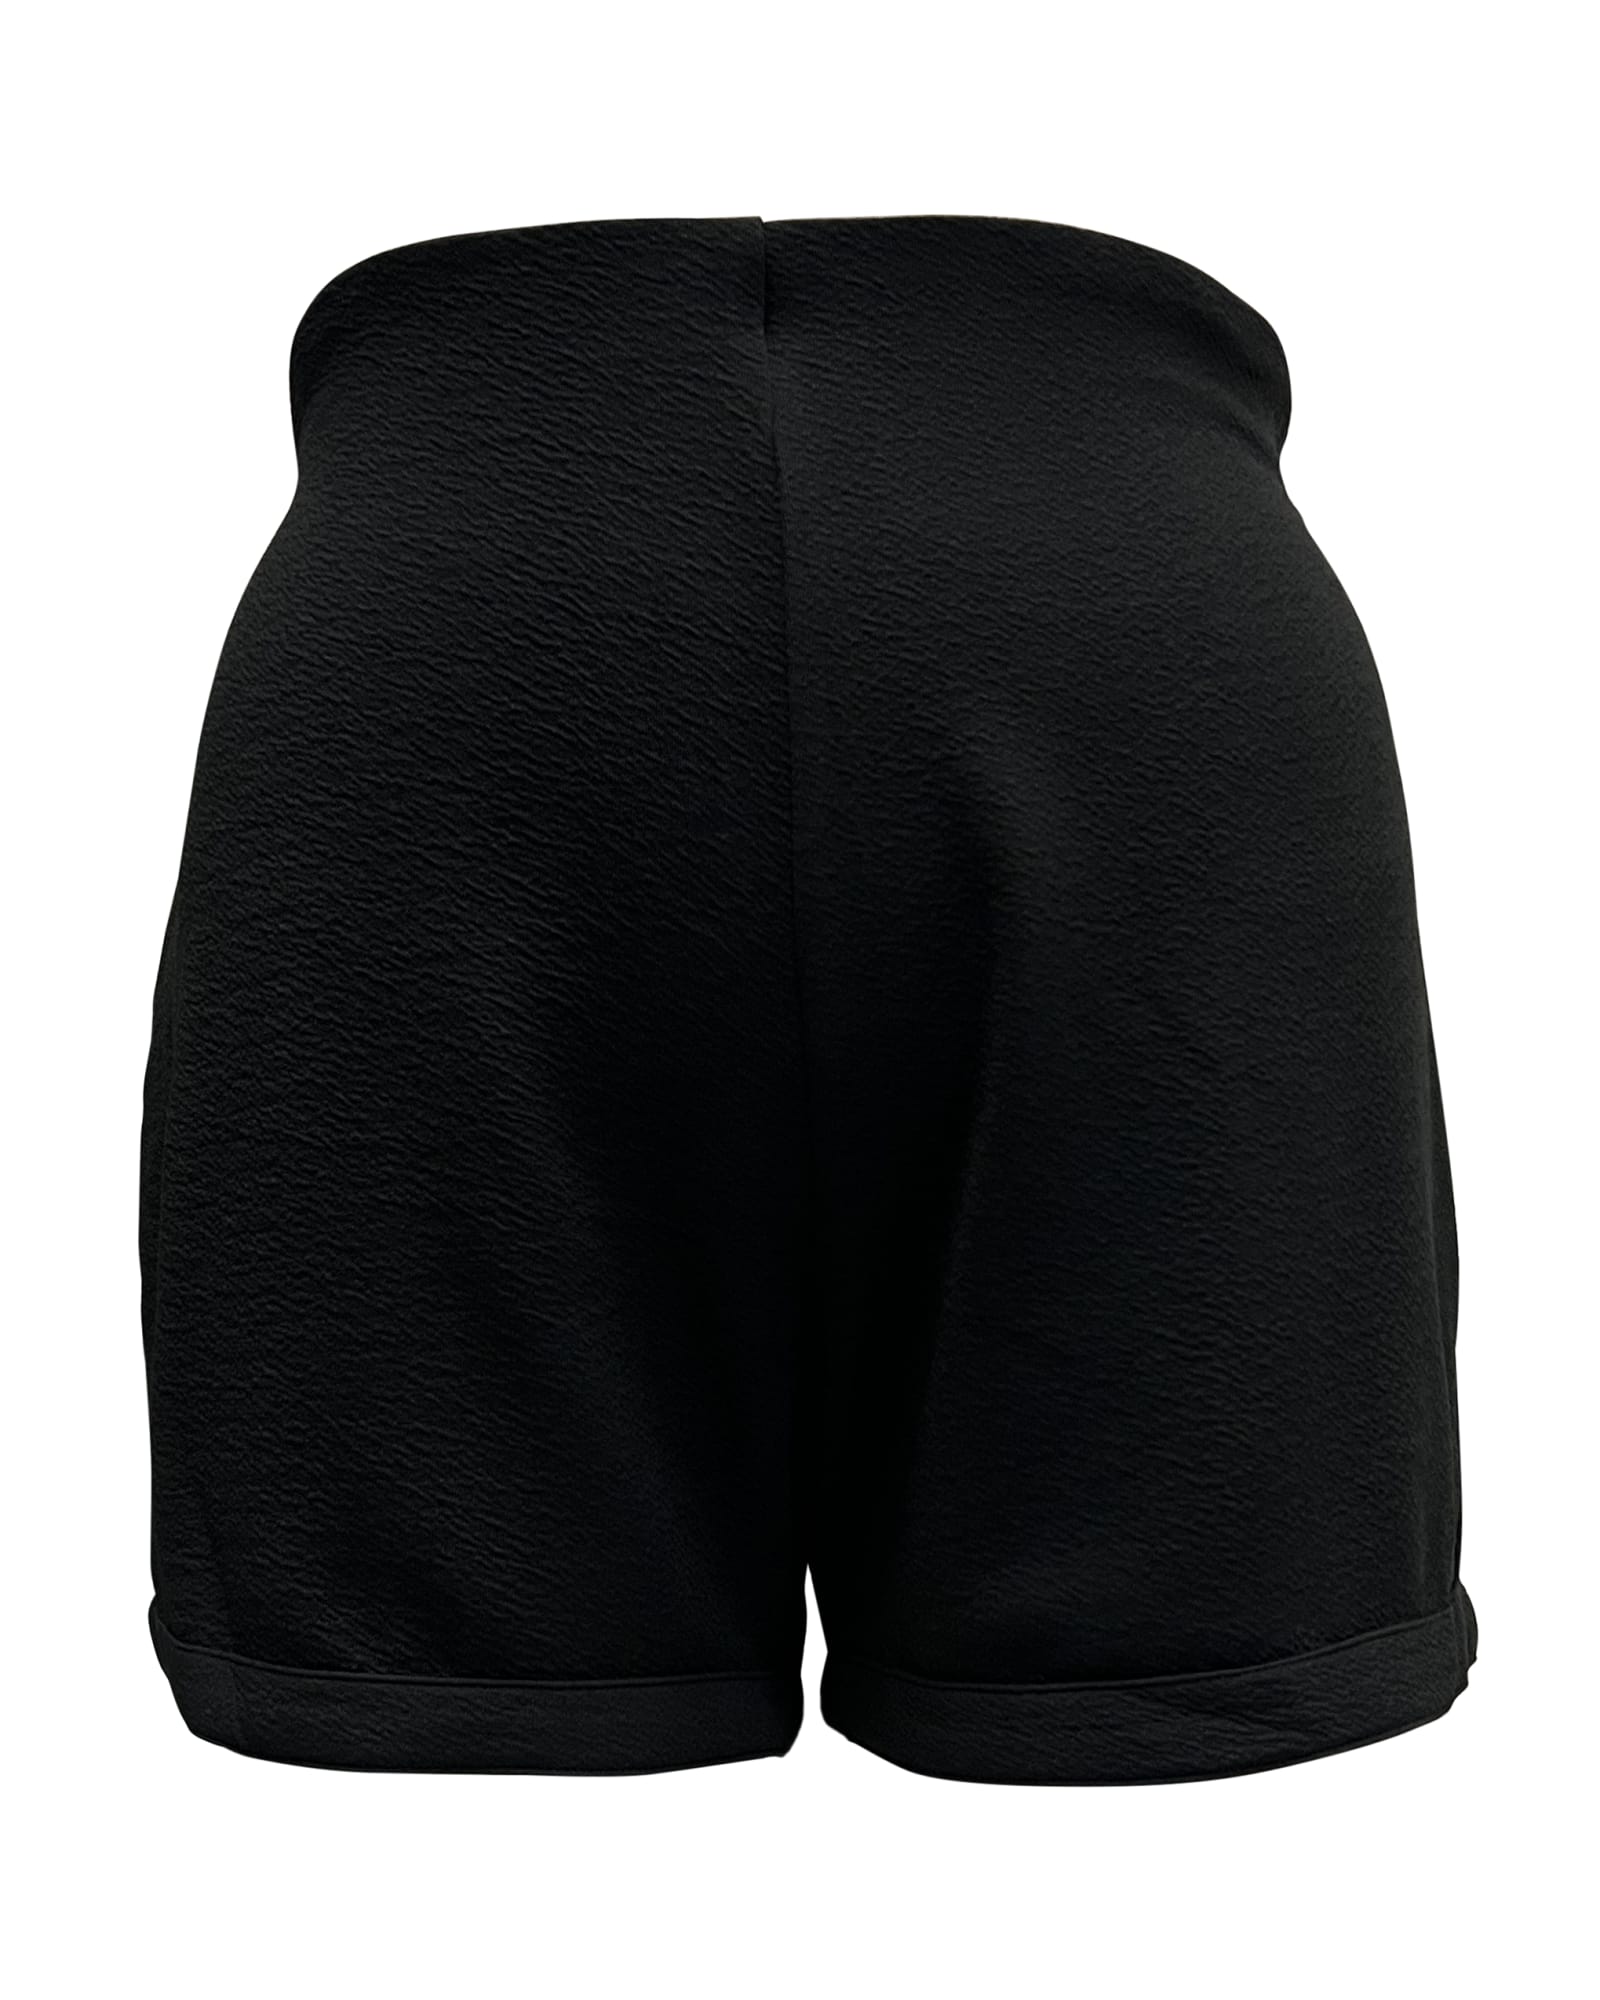 Smak Parlour Black Callie Shorts | Black